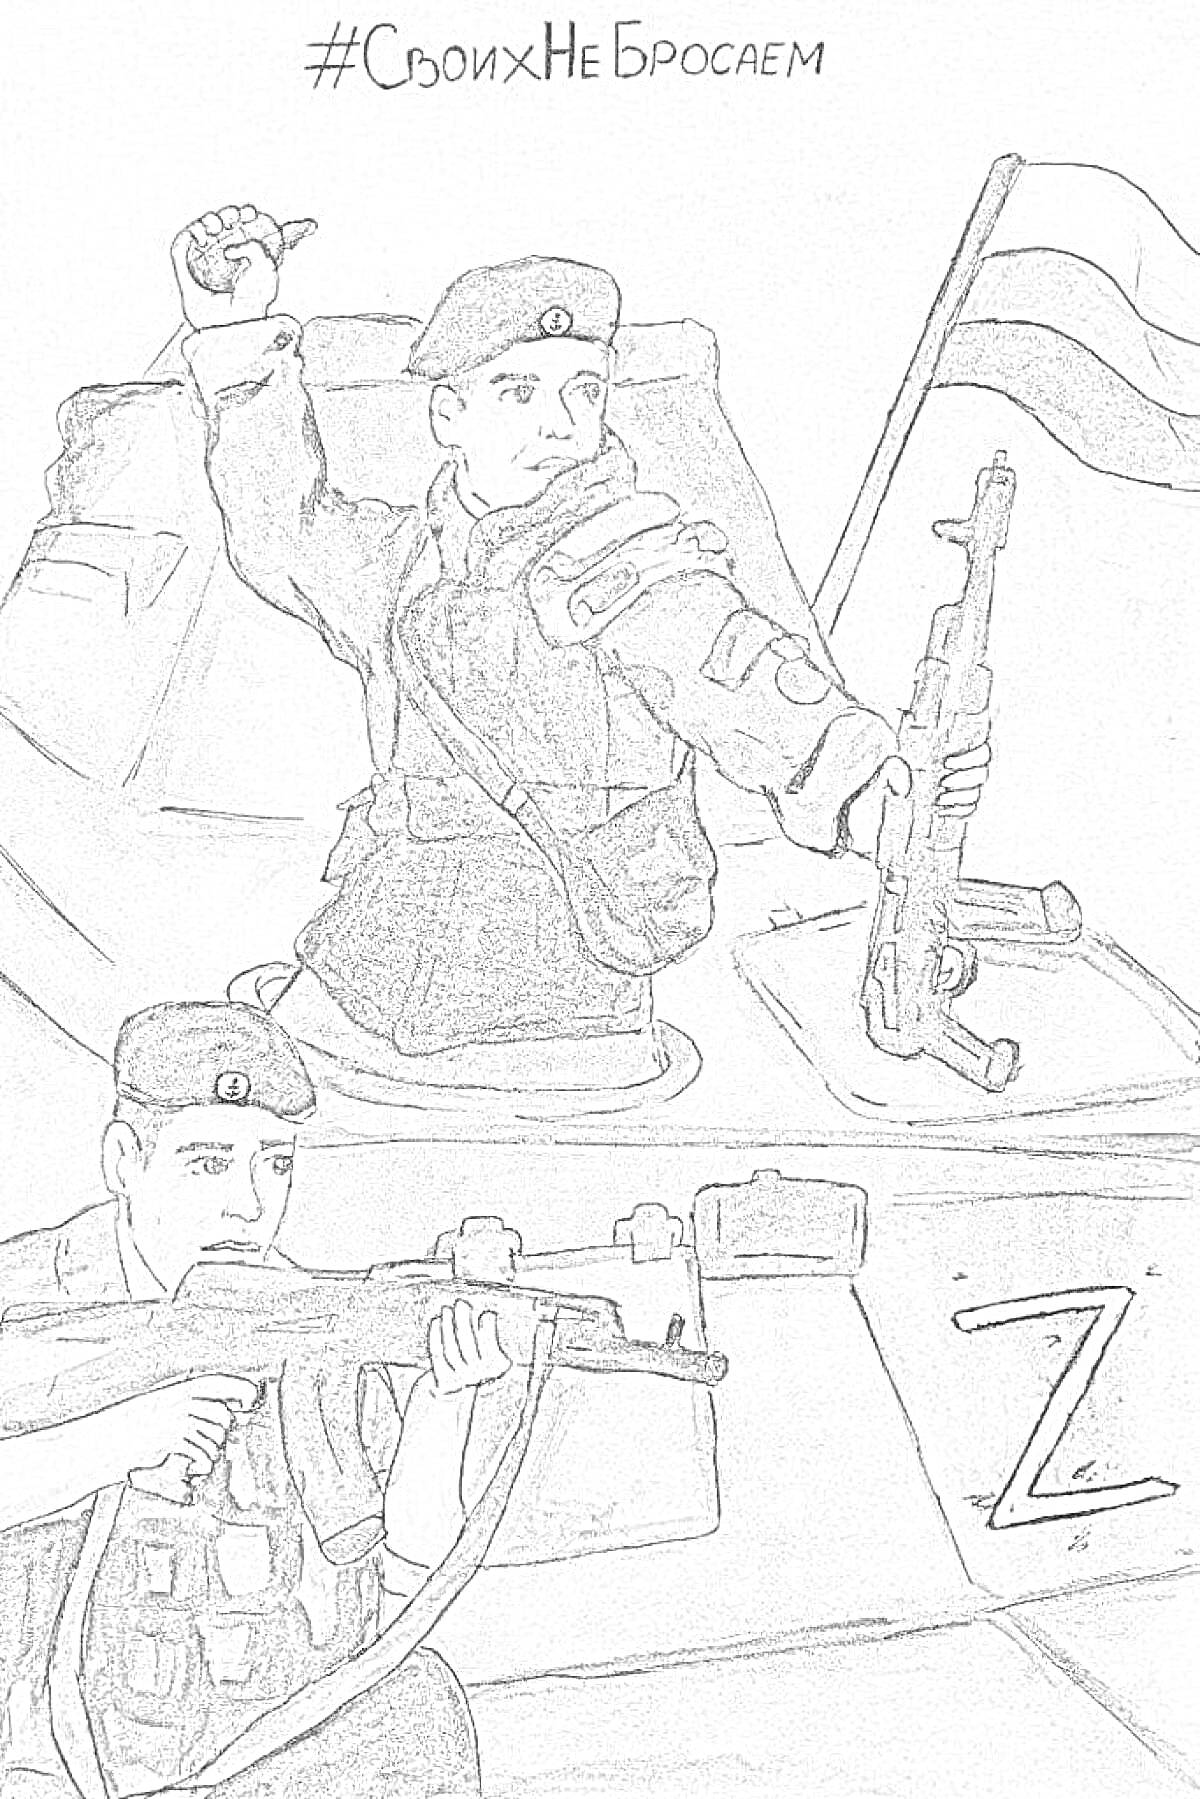  Солдаты в танке с российским флагом и буквой Z